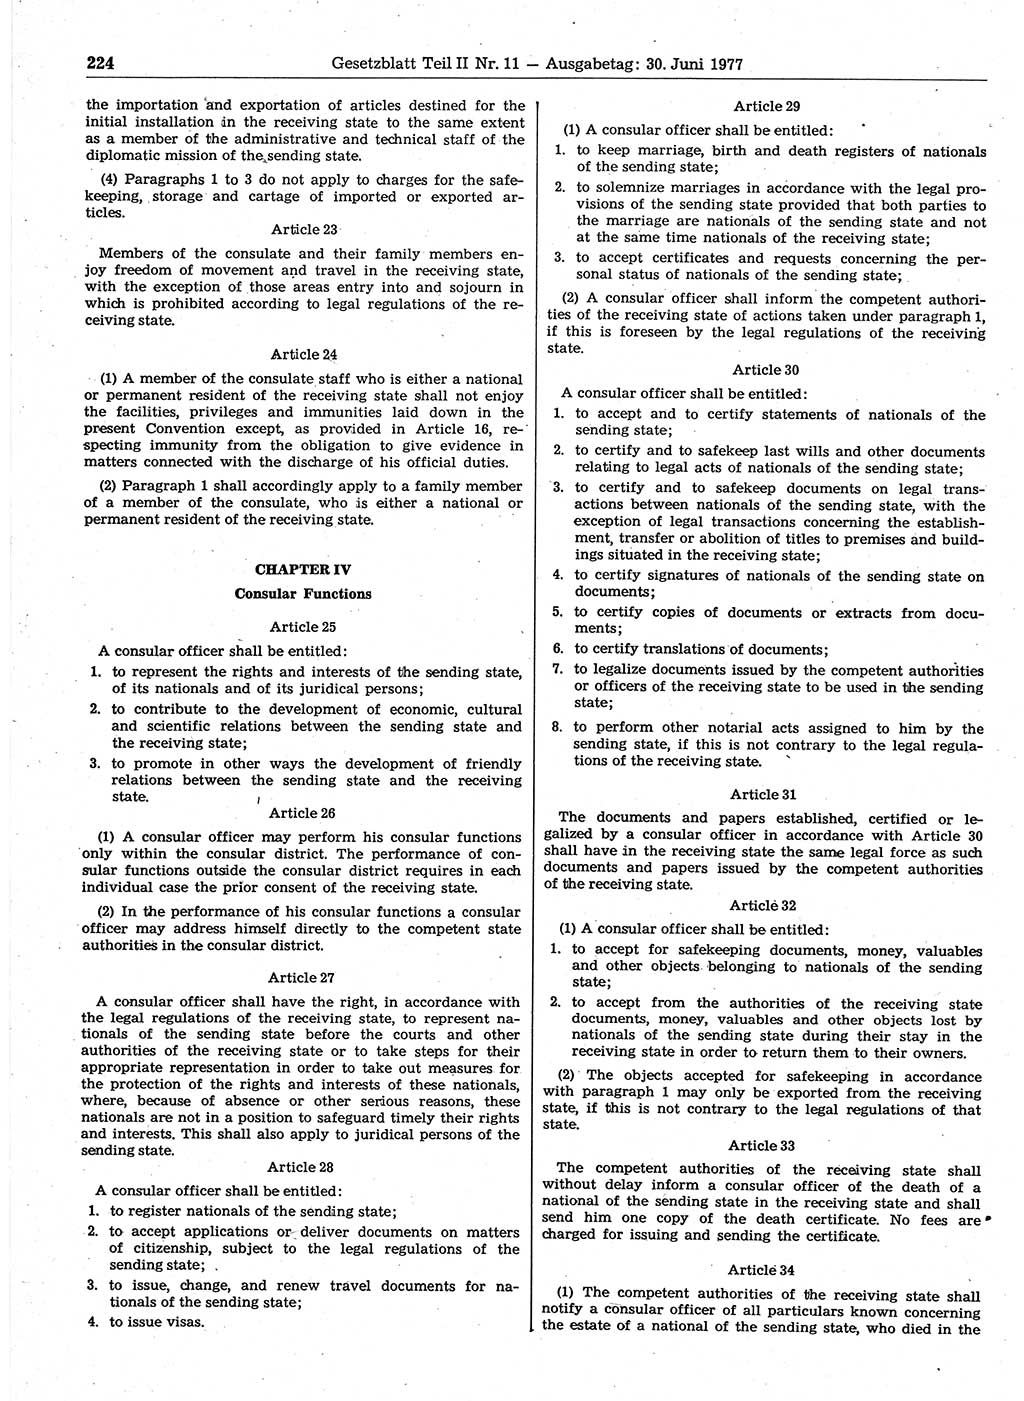 Gesetzblatt (GBl.) der Deutschen Demokratischen Republik (DDR) Teil ⅠⅠ 1977, Seite 224 (GBl. DDR ⅠⅠ 1977, S. 224)